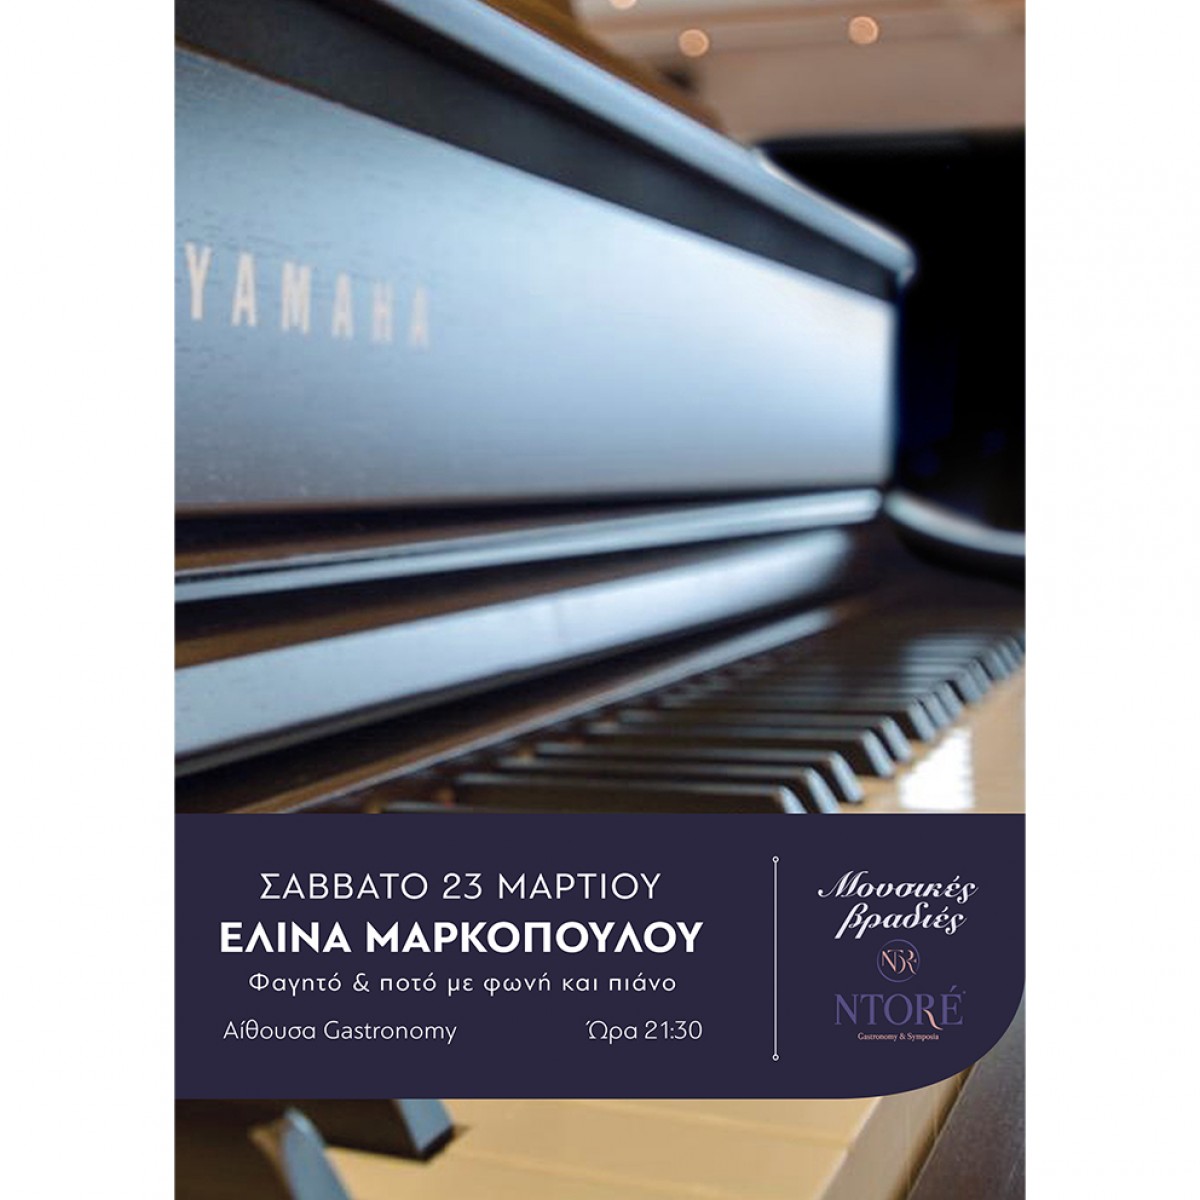 Φαγητό και ποτό με την Ελίνα Μαρκοπούλου στη φωνή και το πιάνο, Σάββατο 23 Μαρτίου, 21:30